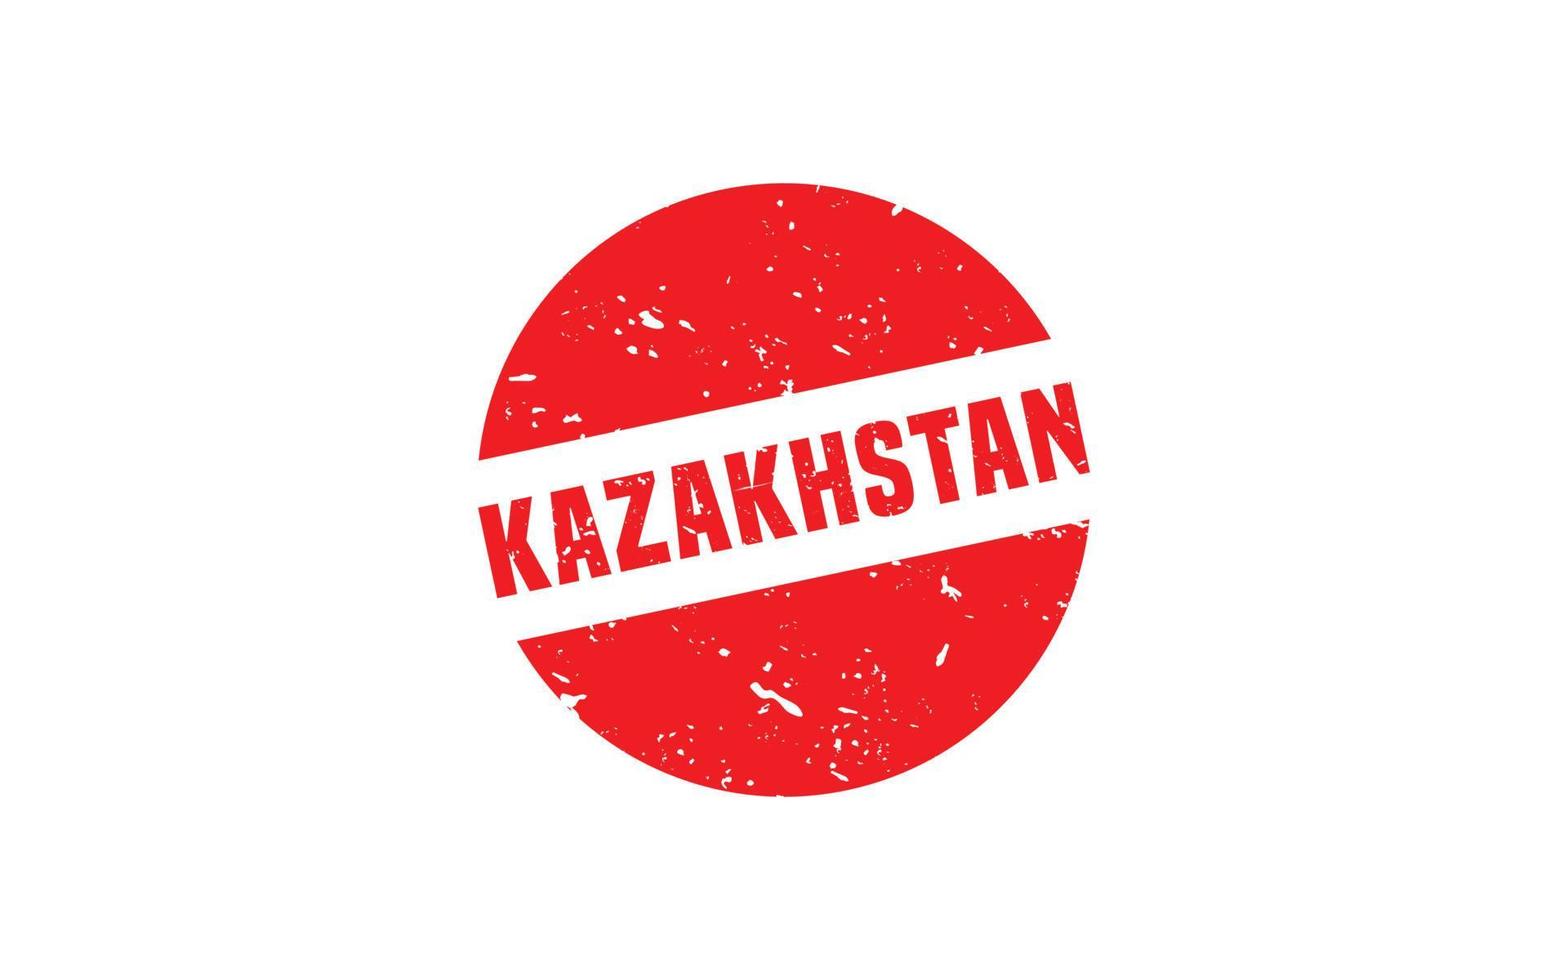 Kazakistan francobollo gomma da cancellare con grunge stile su bianca sfondo vettore